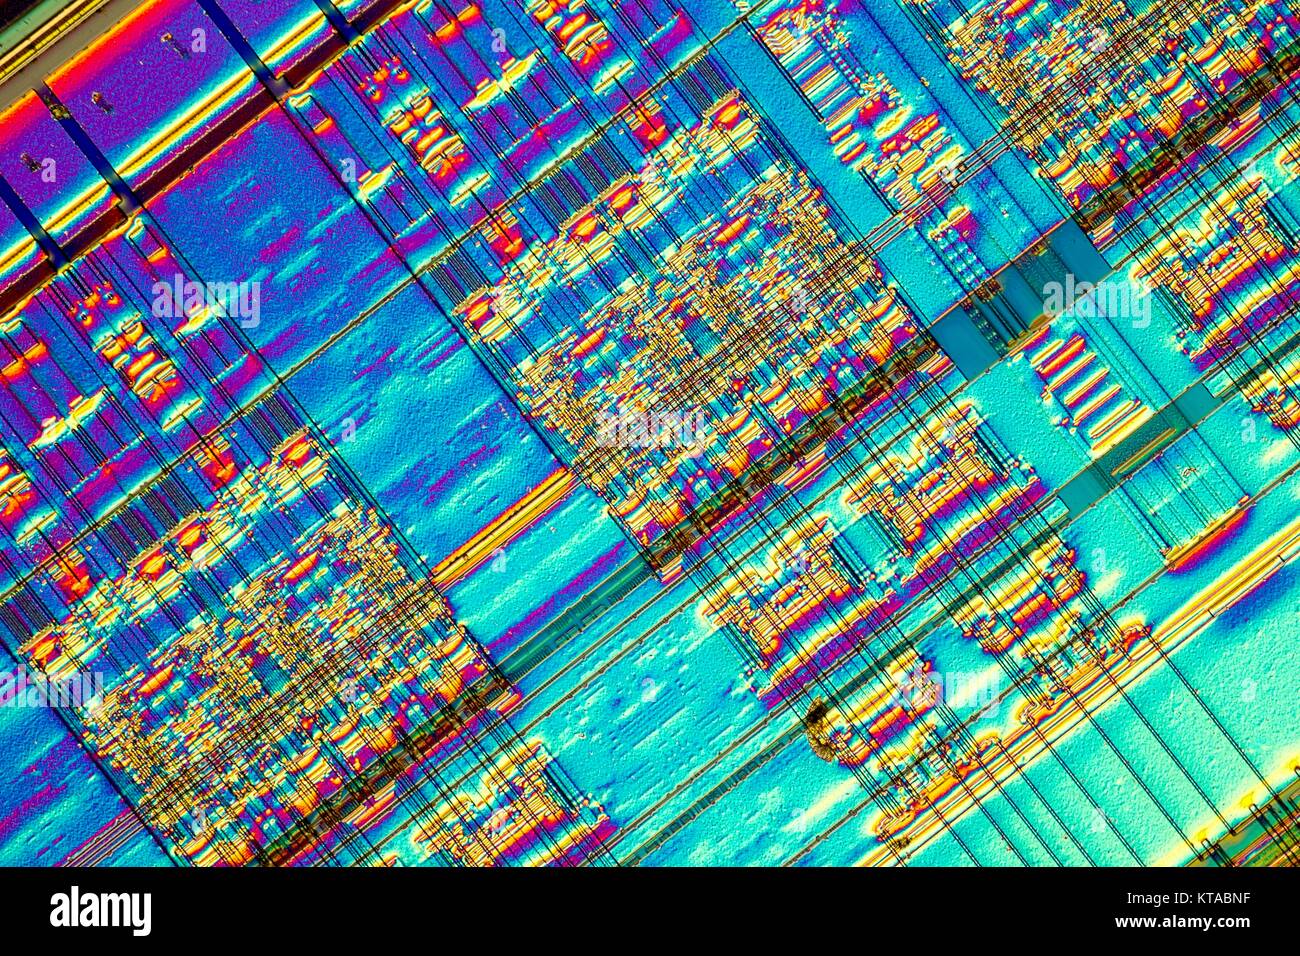 Micrograph Light d'un détail d'une puce mémoire ordinateur RAM. RAM est un  type de mémoire auquel il est possible d'accéder de façon aléatoire ; c'est  à dire, tout octet de mémoire peut